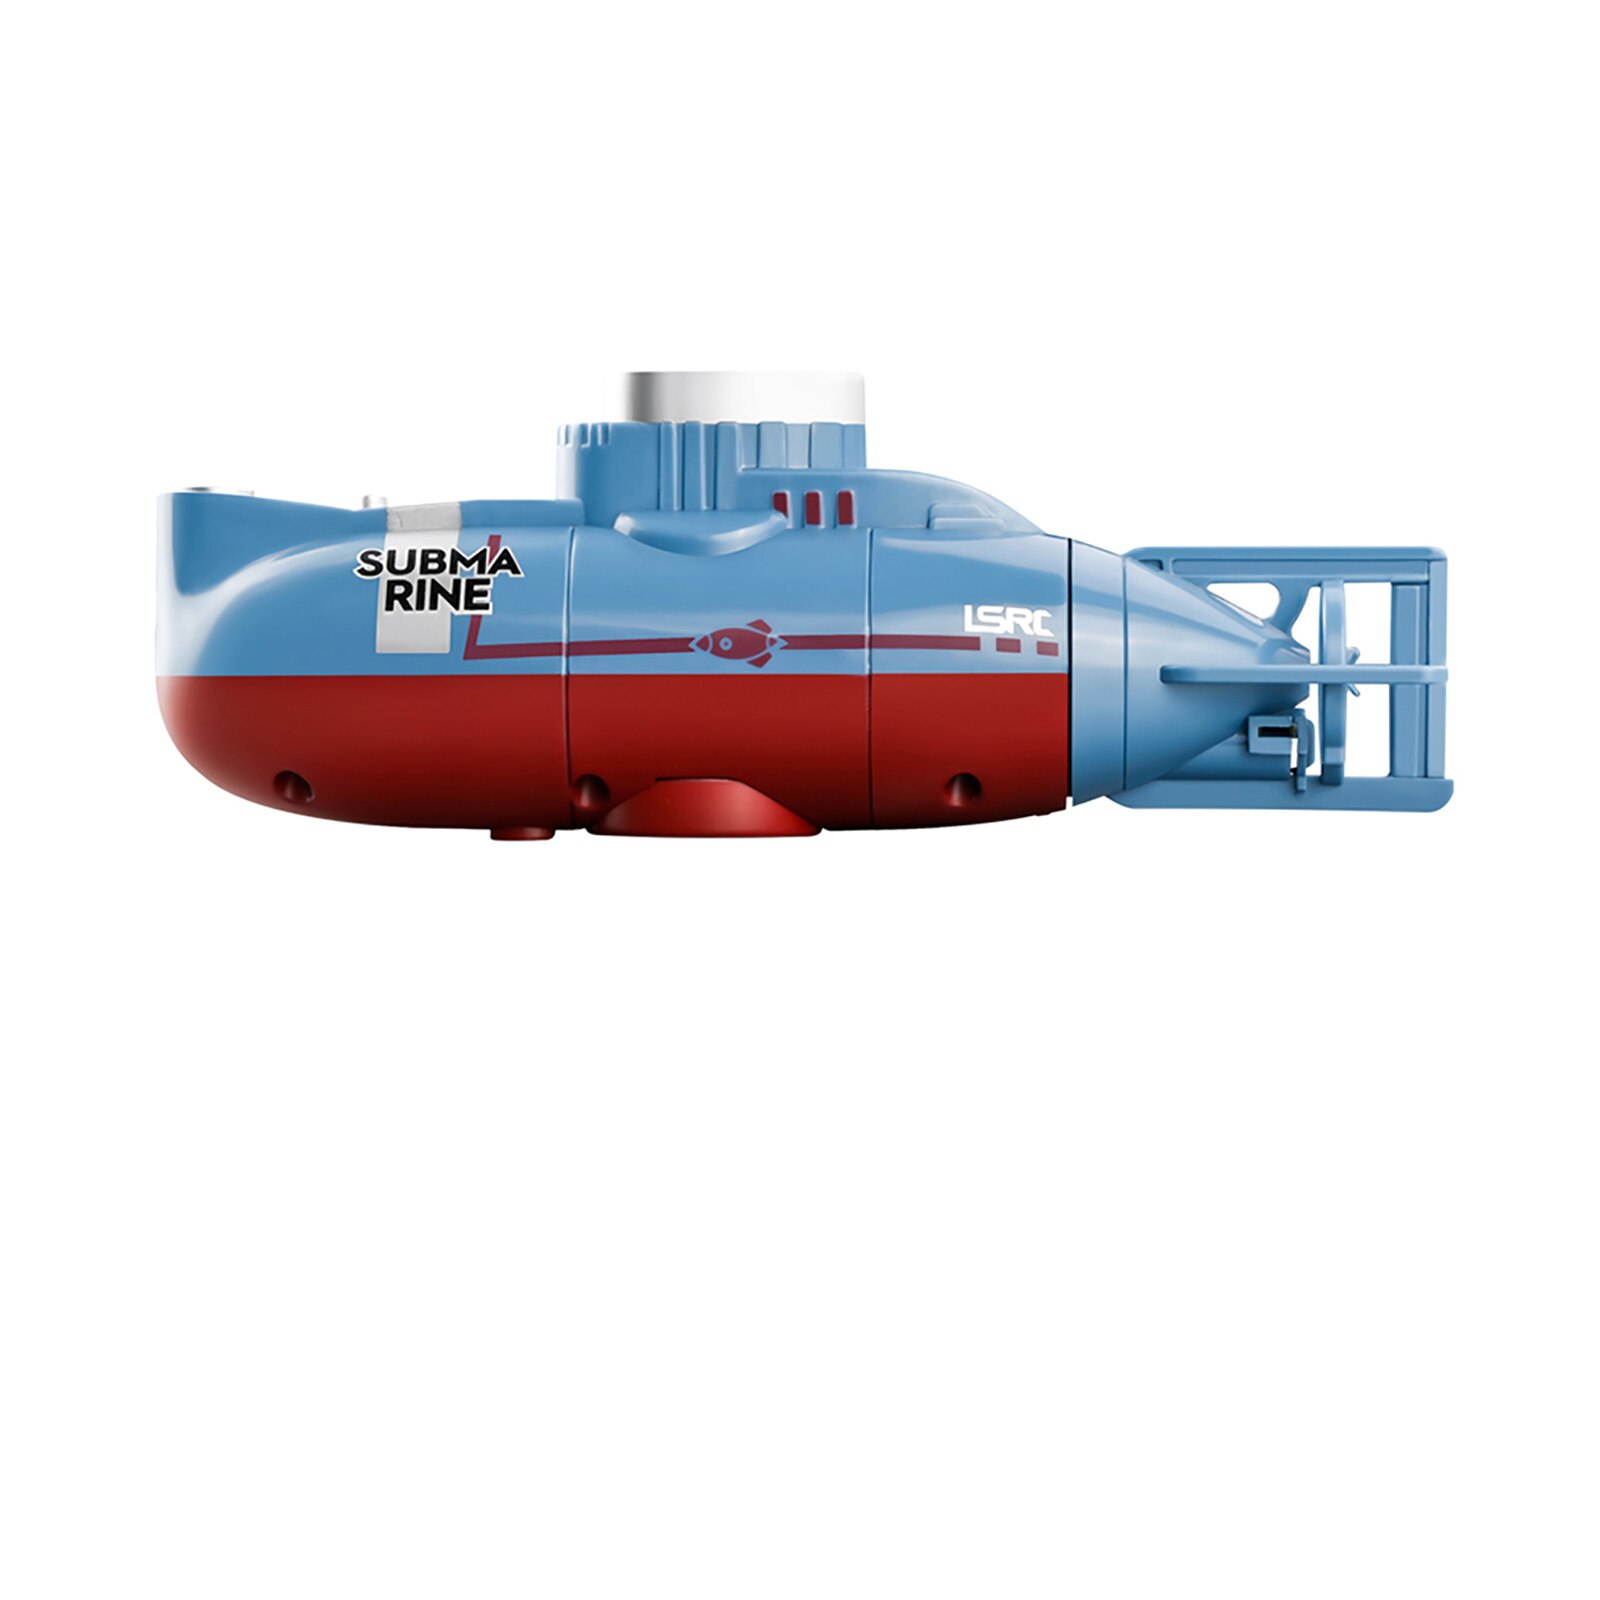 Jouet sous-marin radiocommandé Lsrc pour enfants, jouet flottant, multicolore, 6ch, rotatif à 360 degrés, étanche